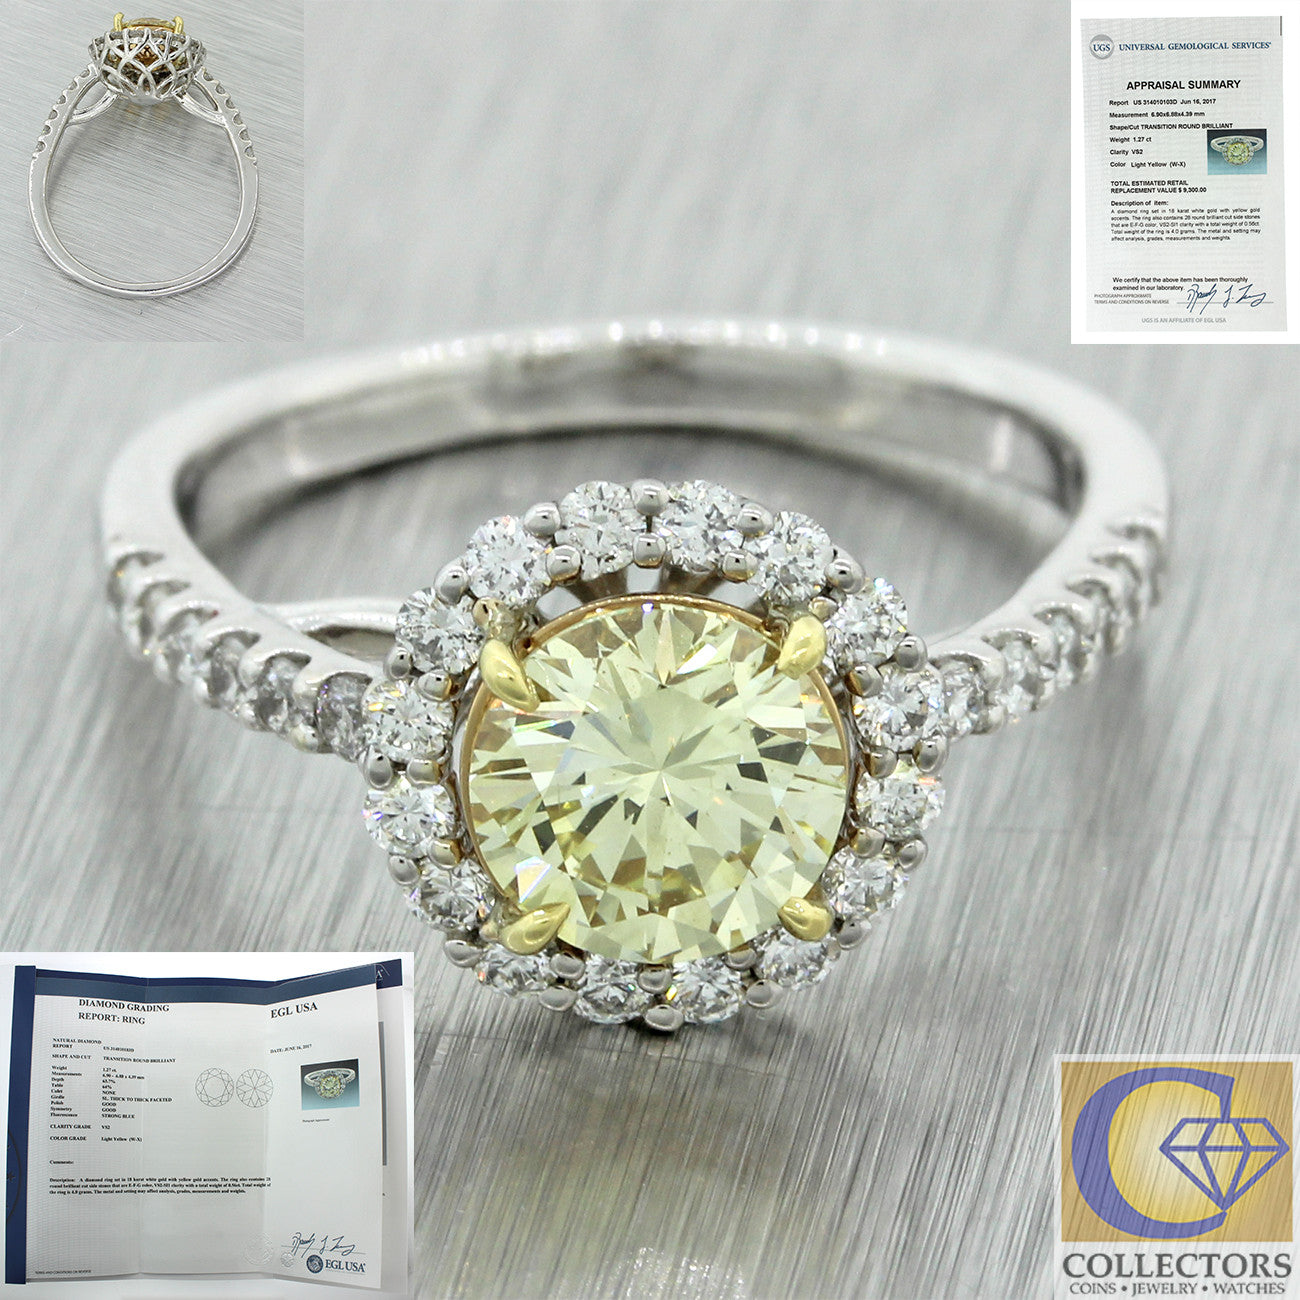 Gorgeous Estate 18k White Gold 1.83ctw Diamond Halo Engagement Ring EGL $9300